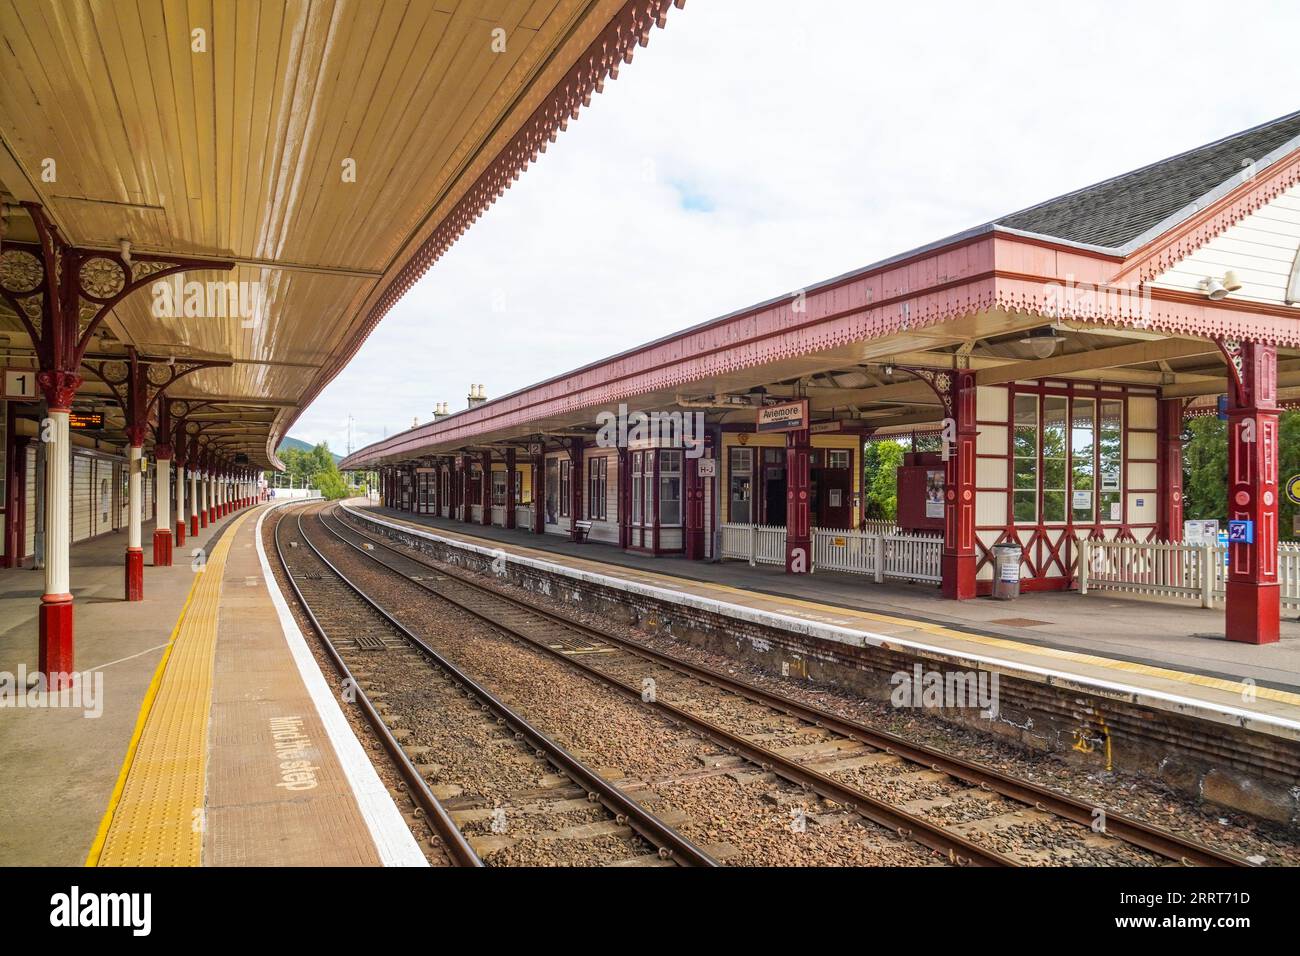 Stazione ferroviaria di Aviemore, Scozia, Regno Unito. La stazione fu aperta il 3 agosto 1863 su progetto dell'architetto William Roberts. Foto Stock